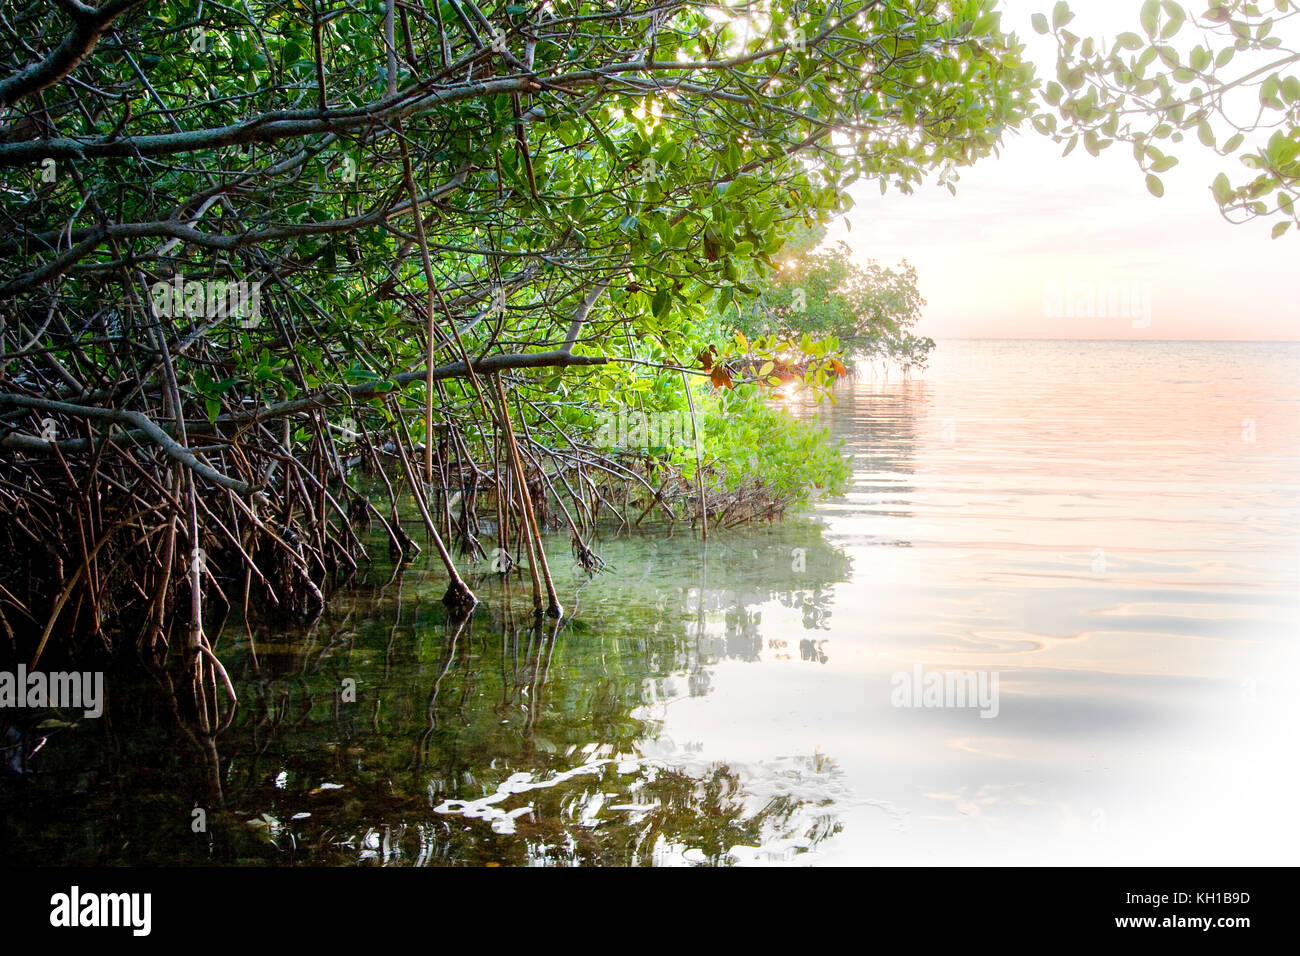 Red Mangroves, Rhizophora mangle, at daybreak Florida Keys National Marine Sanctuary, Key Largo, Florida Stock Photo